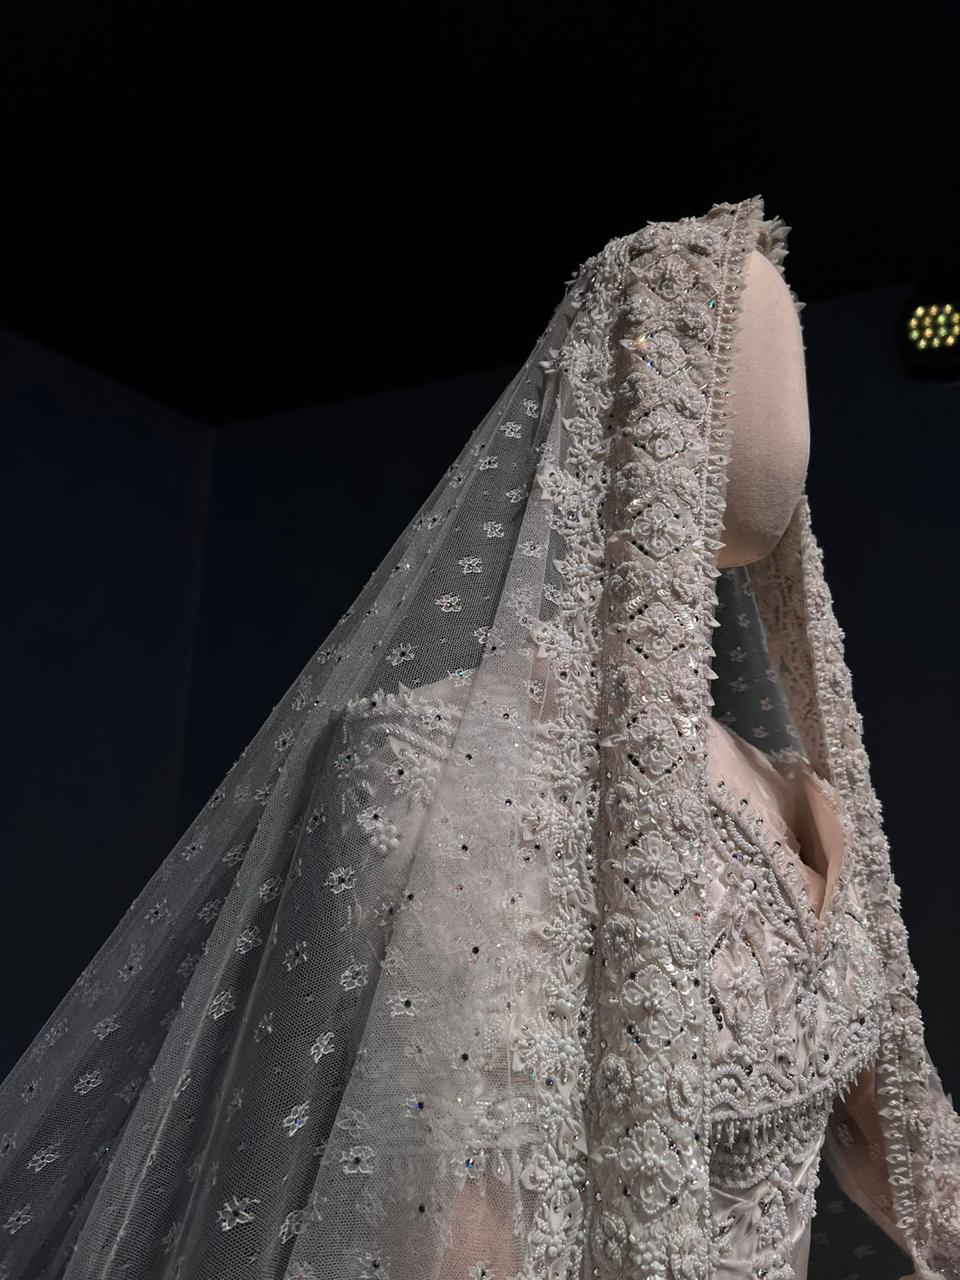 استوحت المصممة دار الهنوف تفاصيل الفستان من فستان زفاف والدتها